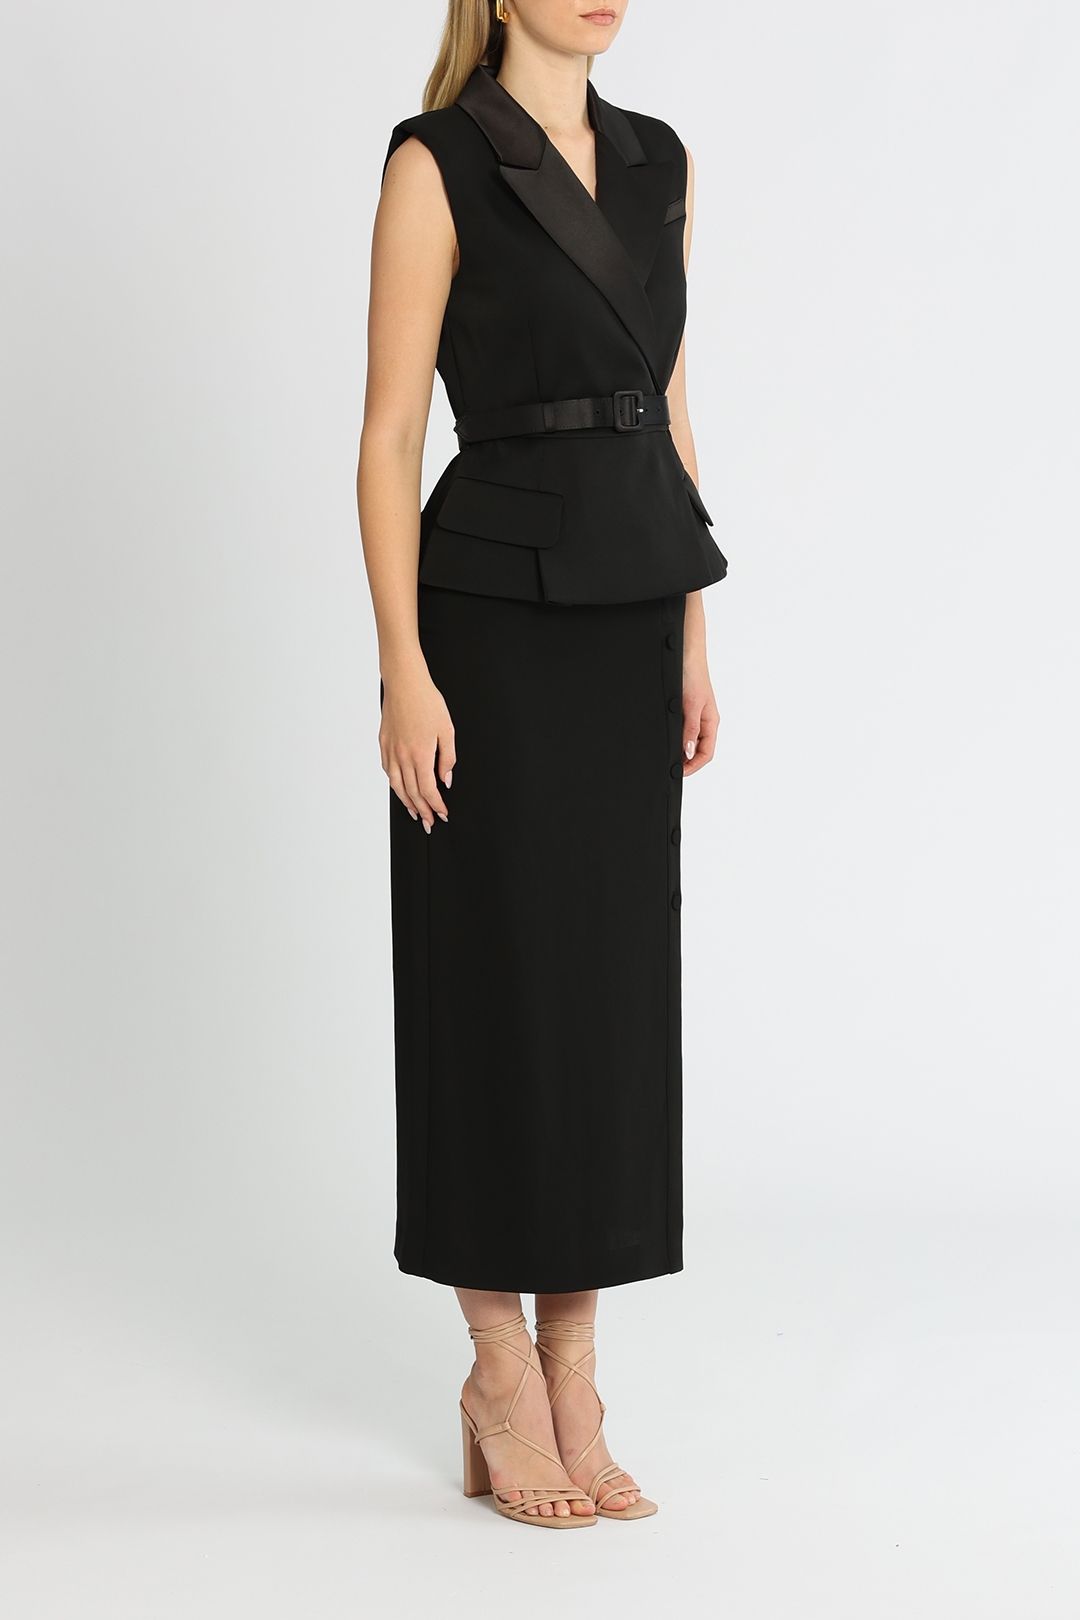 Tailored Midi Dress Black V Neckline